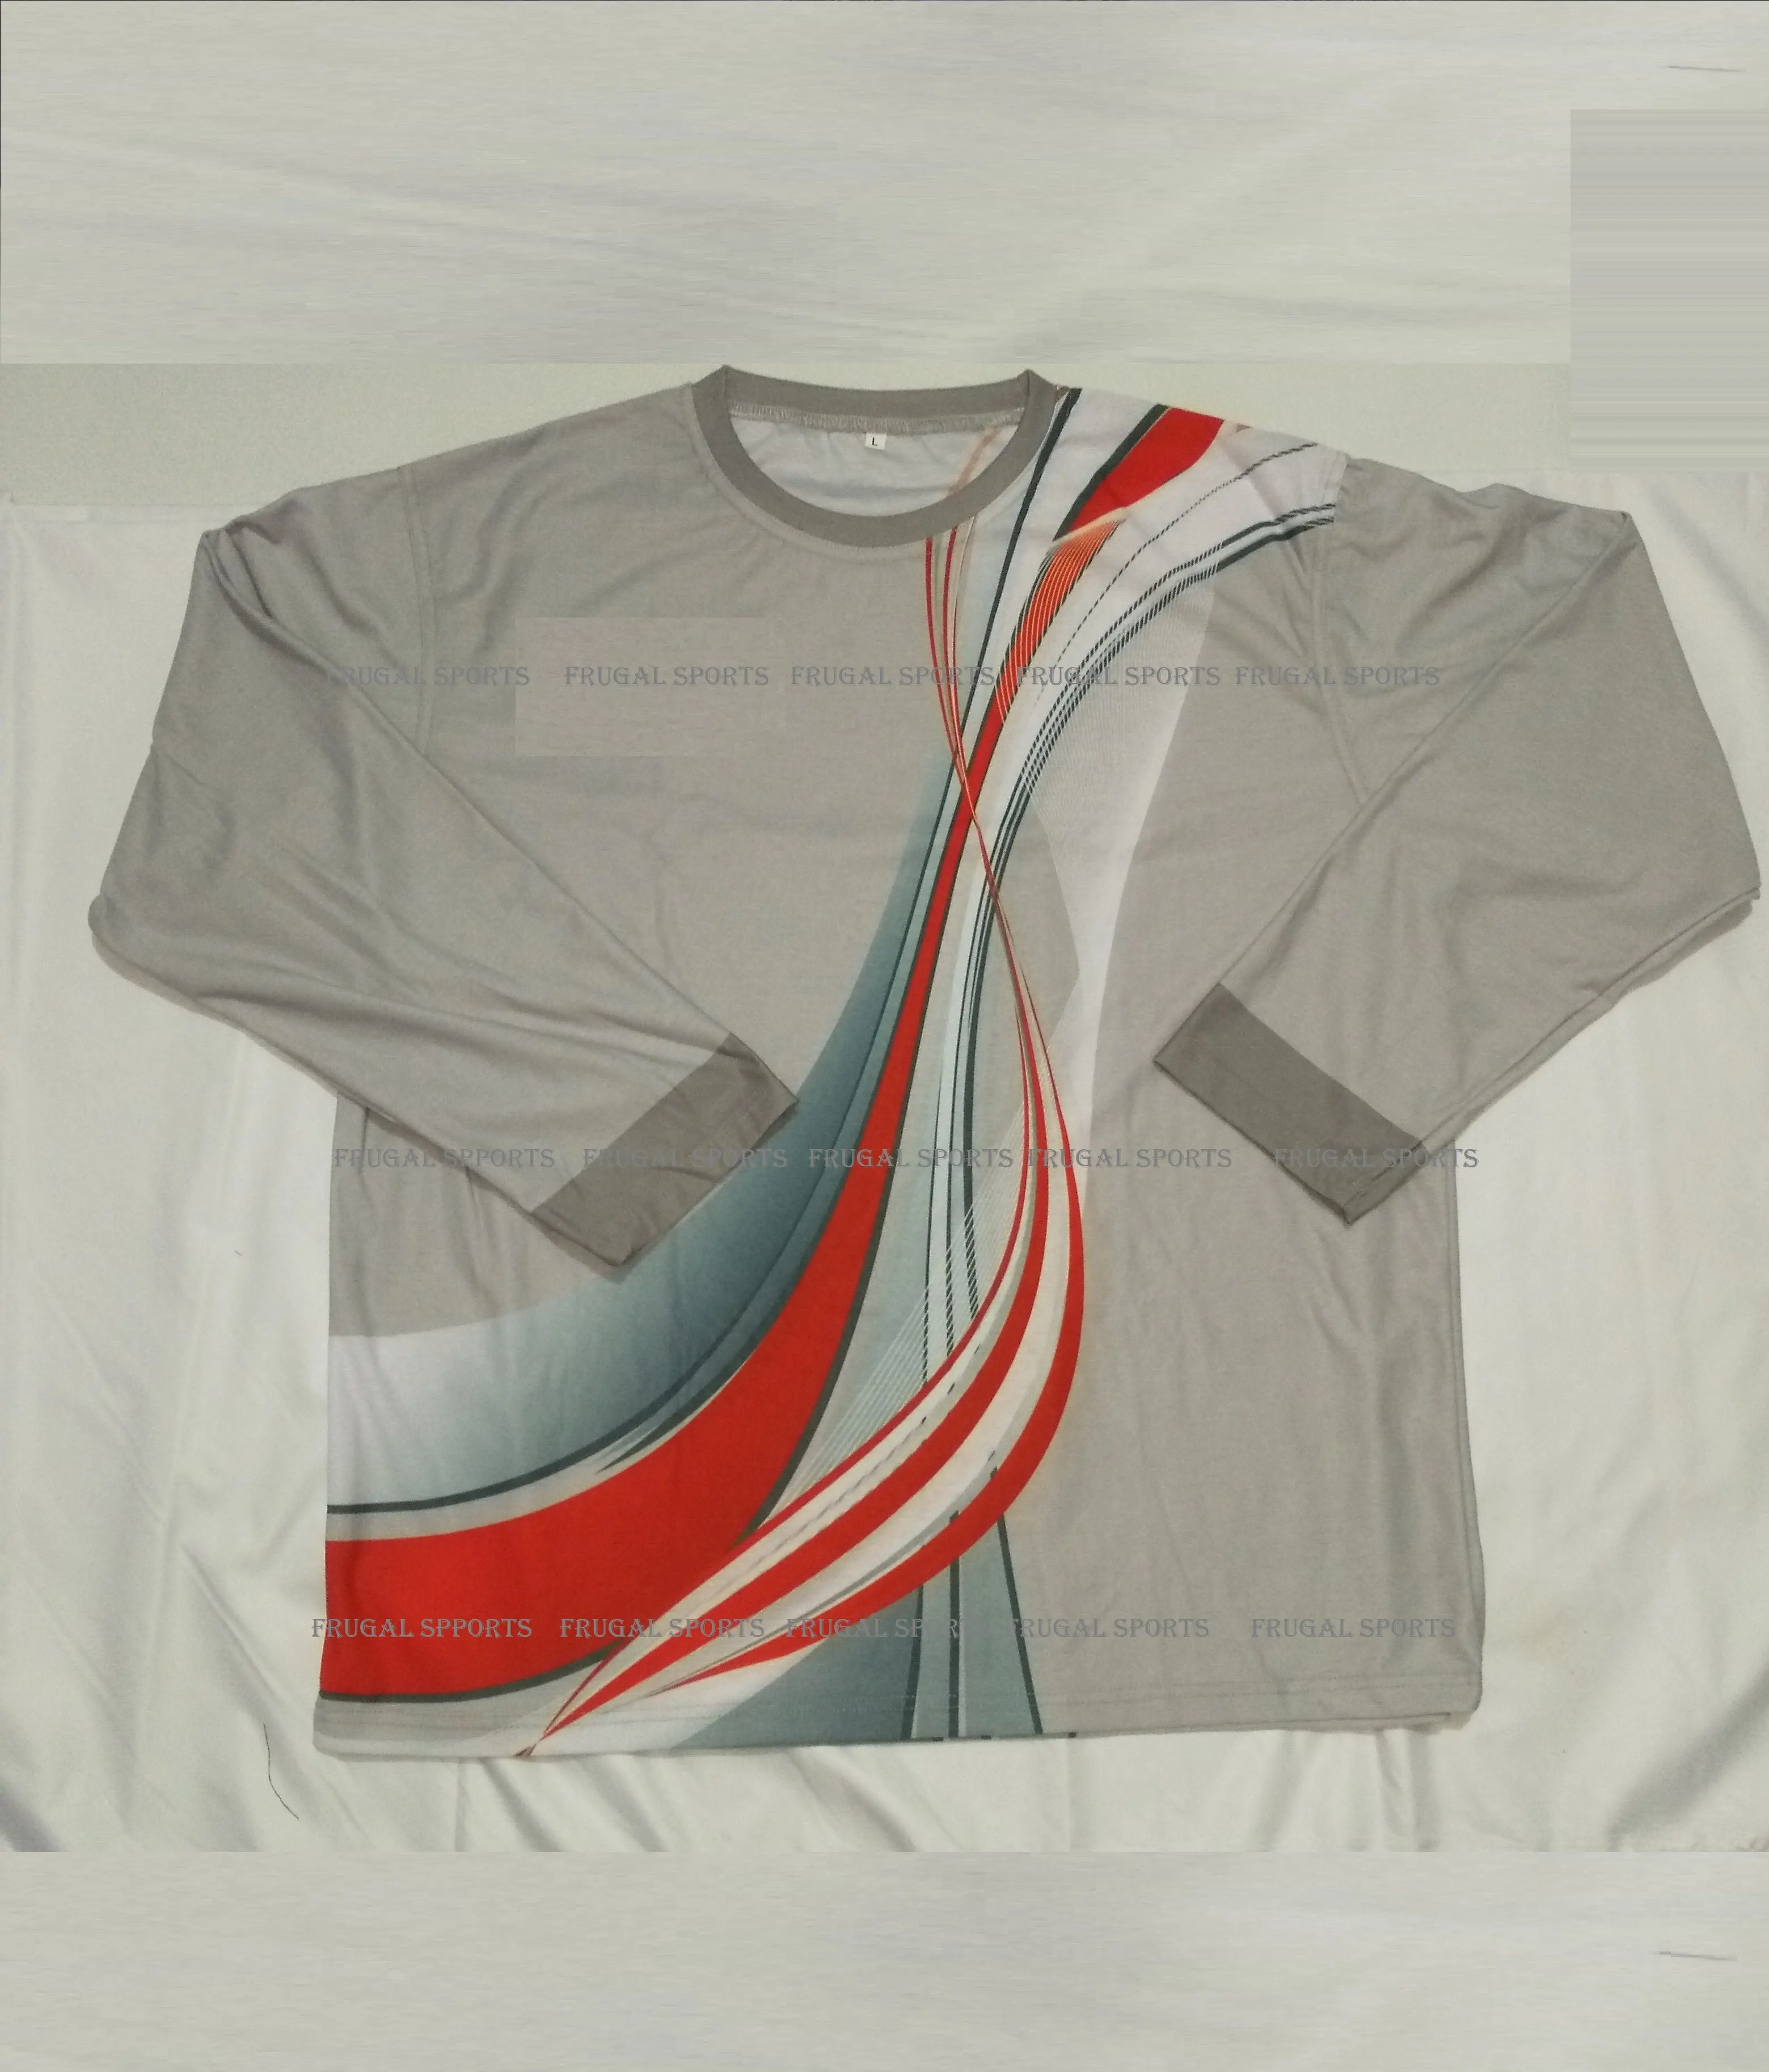 Camisetas de algodón de manga larga para hombres y mujeres, camisas de tela de algodón, precio barato, pantalones cortos con estampado personalizado